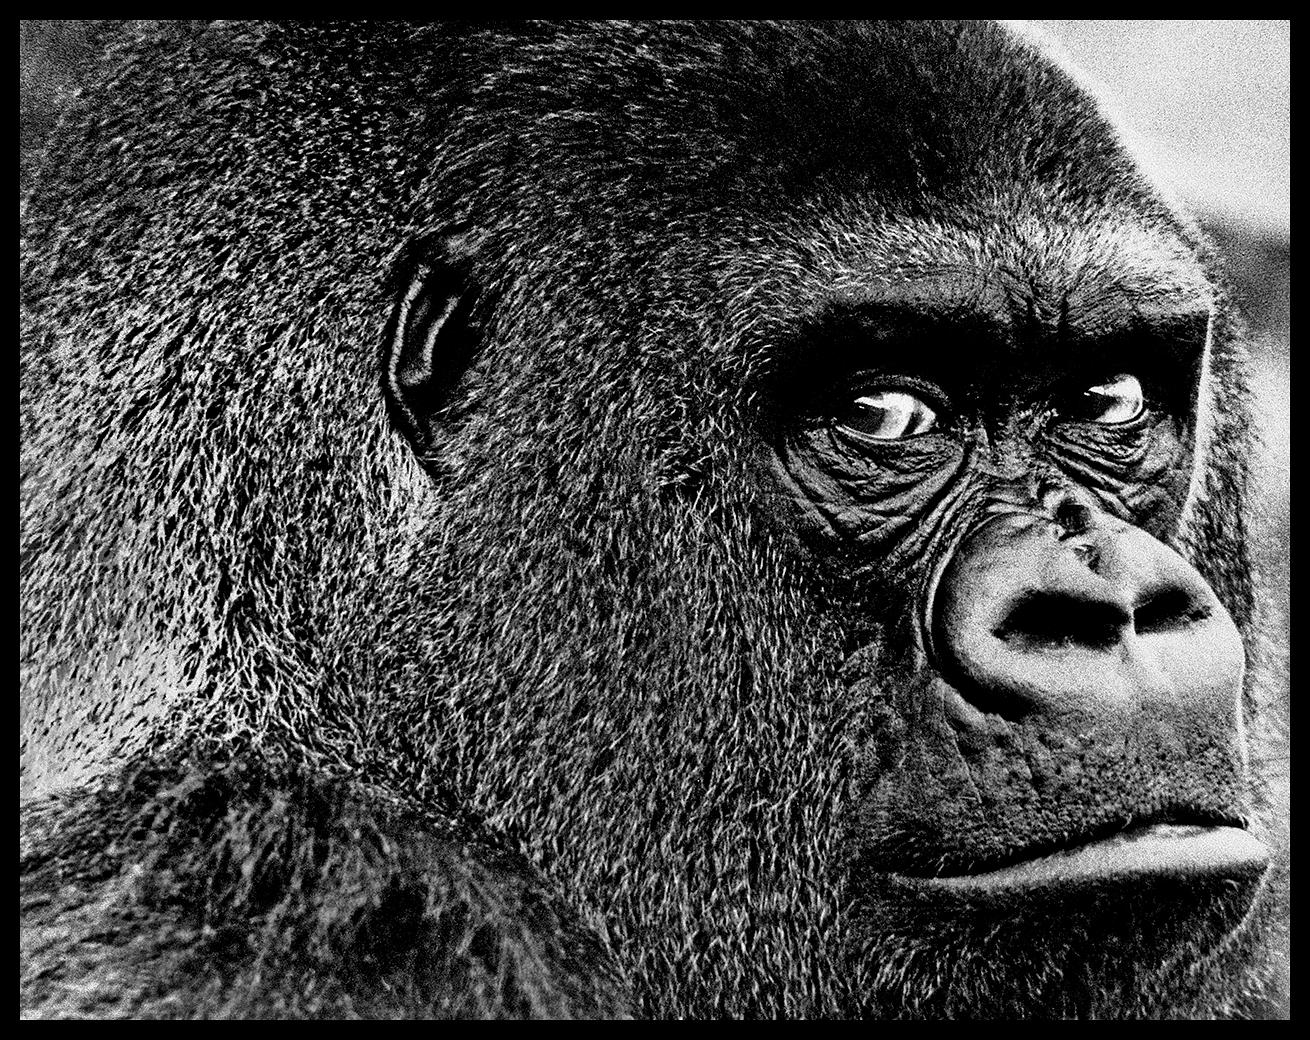 Guy The Gorilla Regent's Park Londres

Par Arthur Steele 

Taille du papier : 44 x 33.5" / 112 x 85 cm

Tirage à la gélatine argentique
1970 (imprimé ultérieurement)
non encadré
signé à la main
édition limitée à 30 exemplaires

note : d'autres